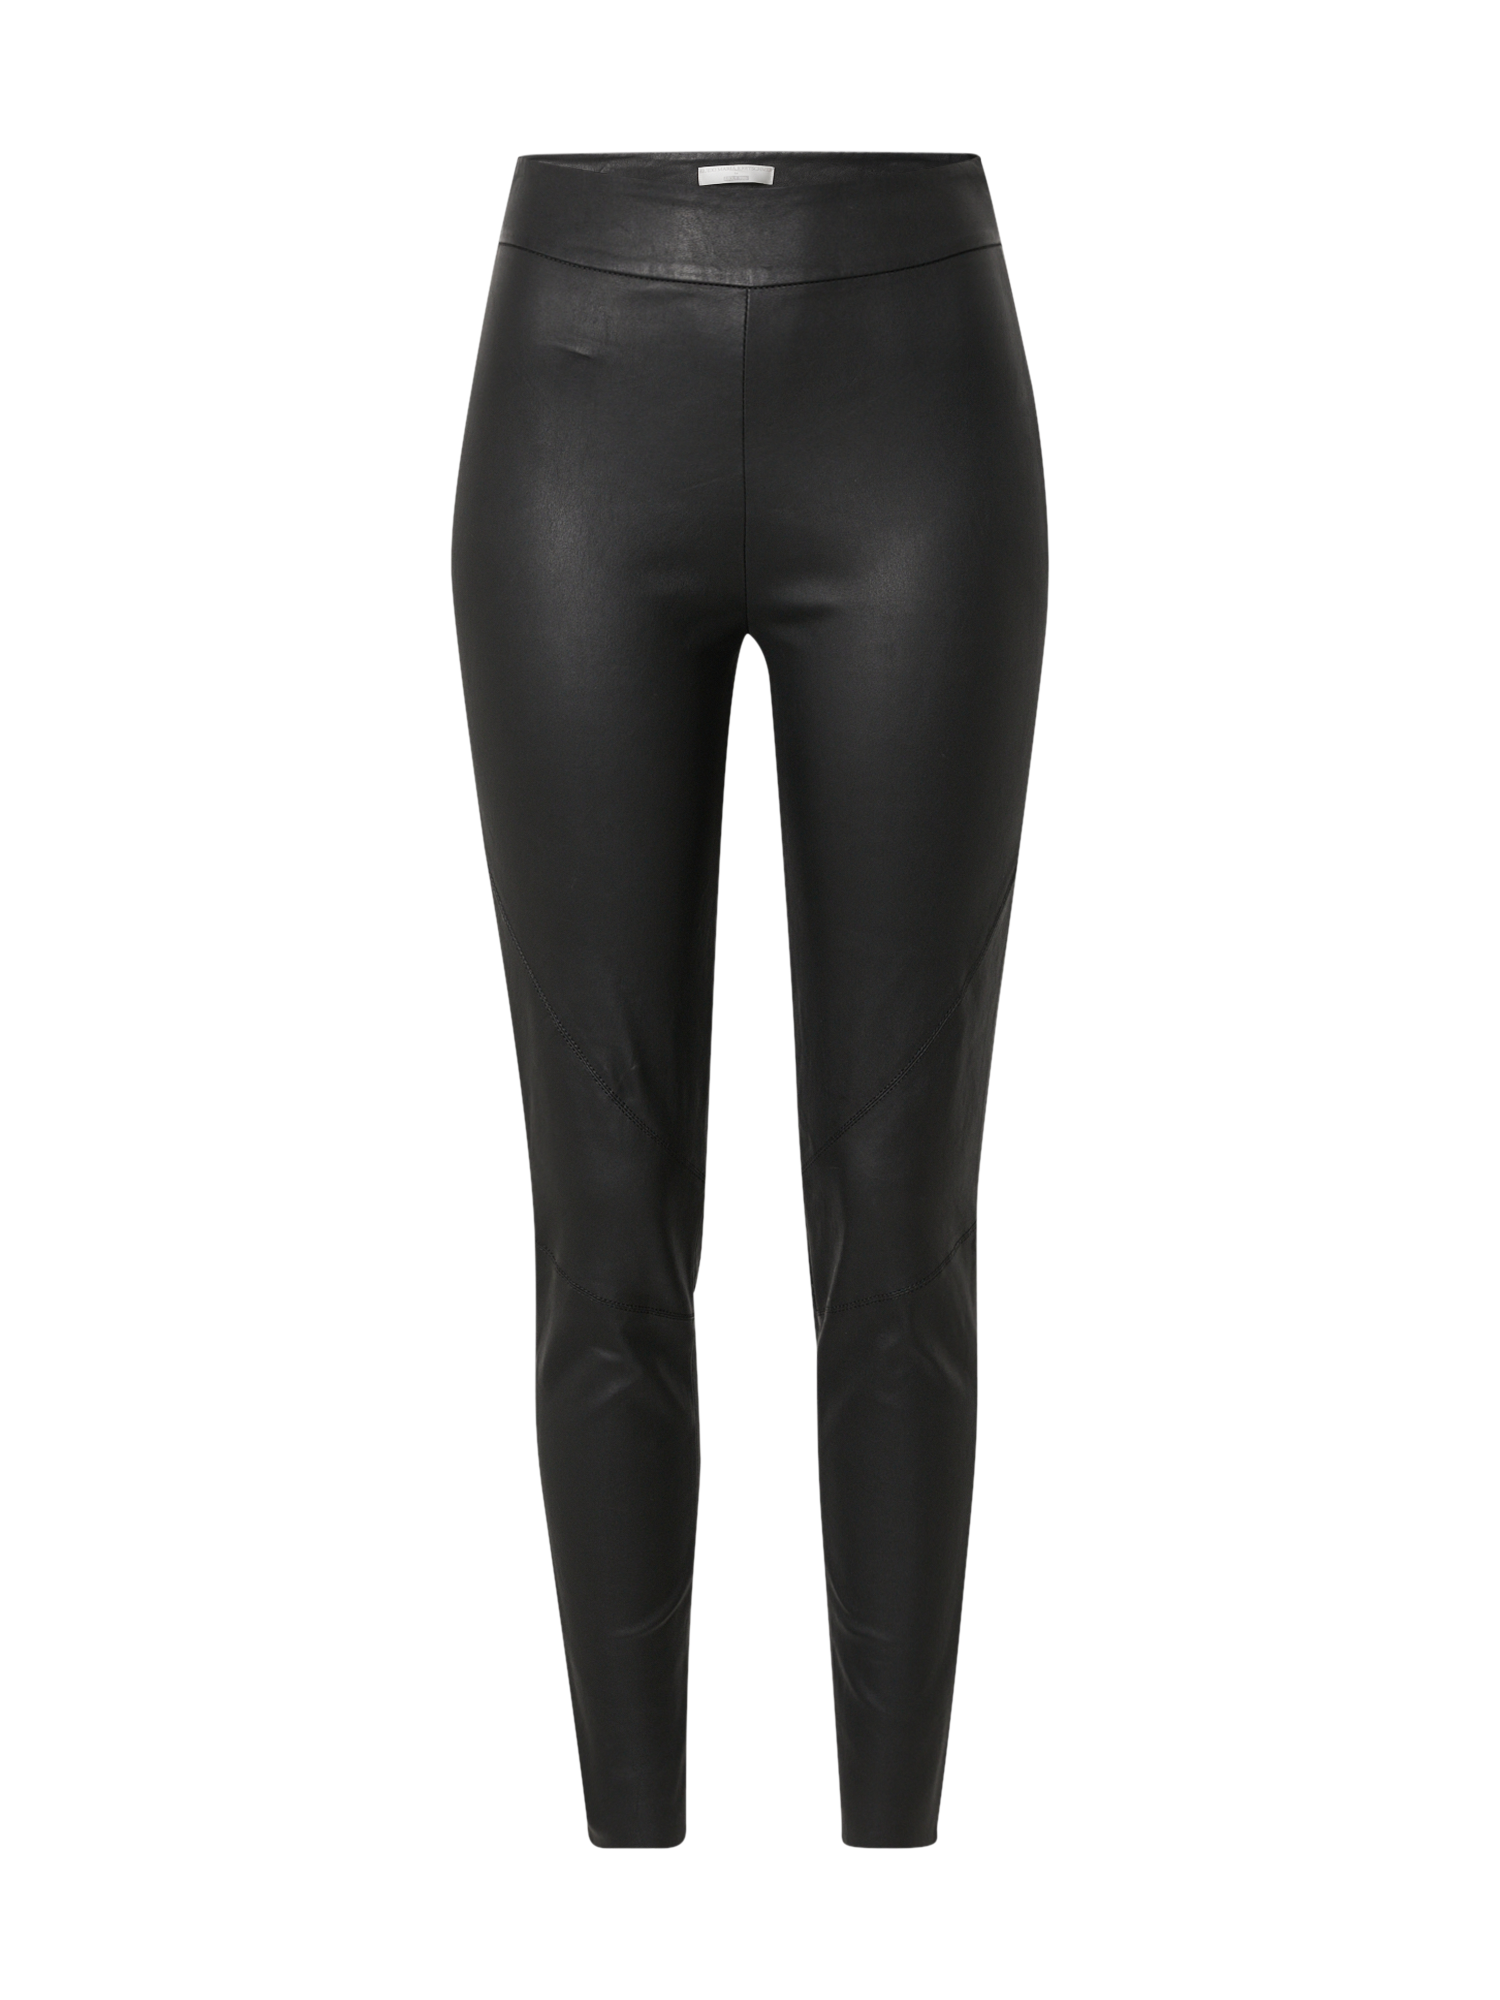 aFQx2 Kobiety Guido Maria Kretschmer Collection Spodnie Lieven w kolorze Czarnym 